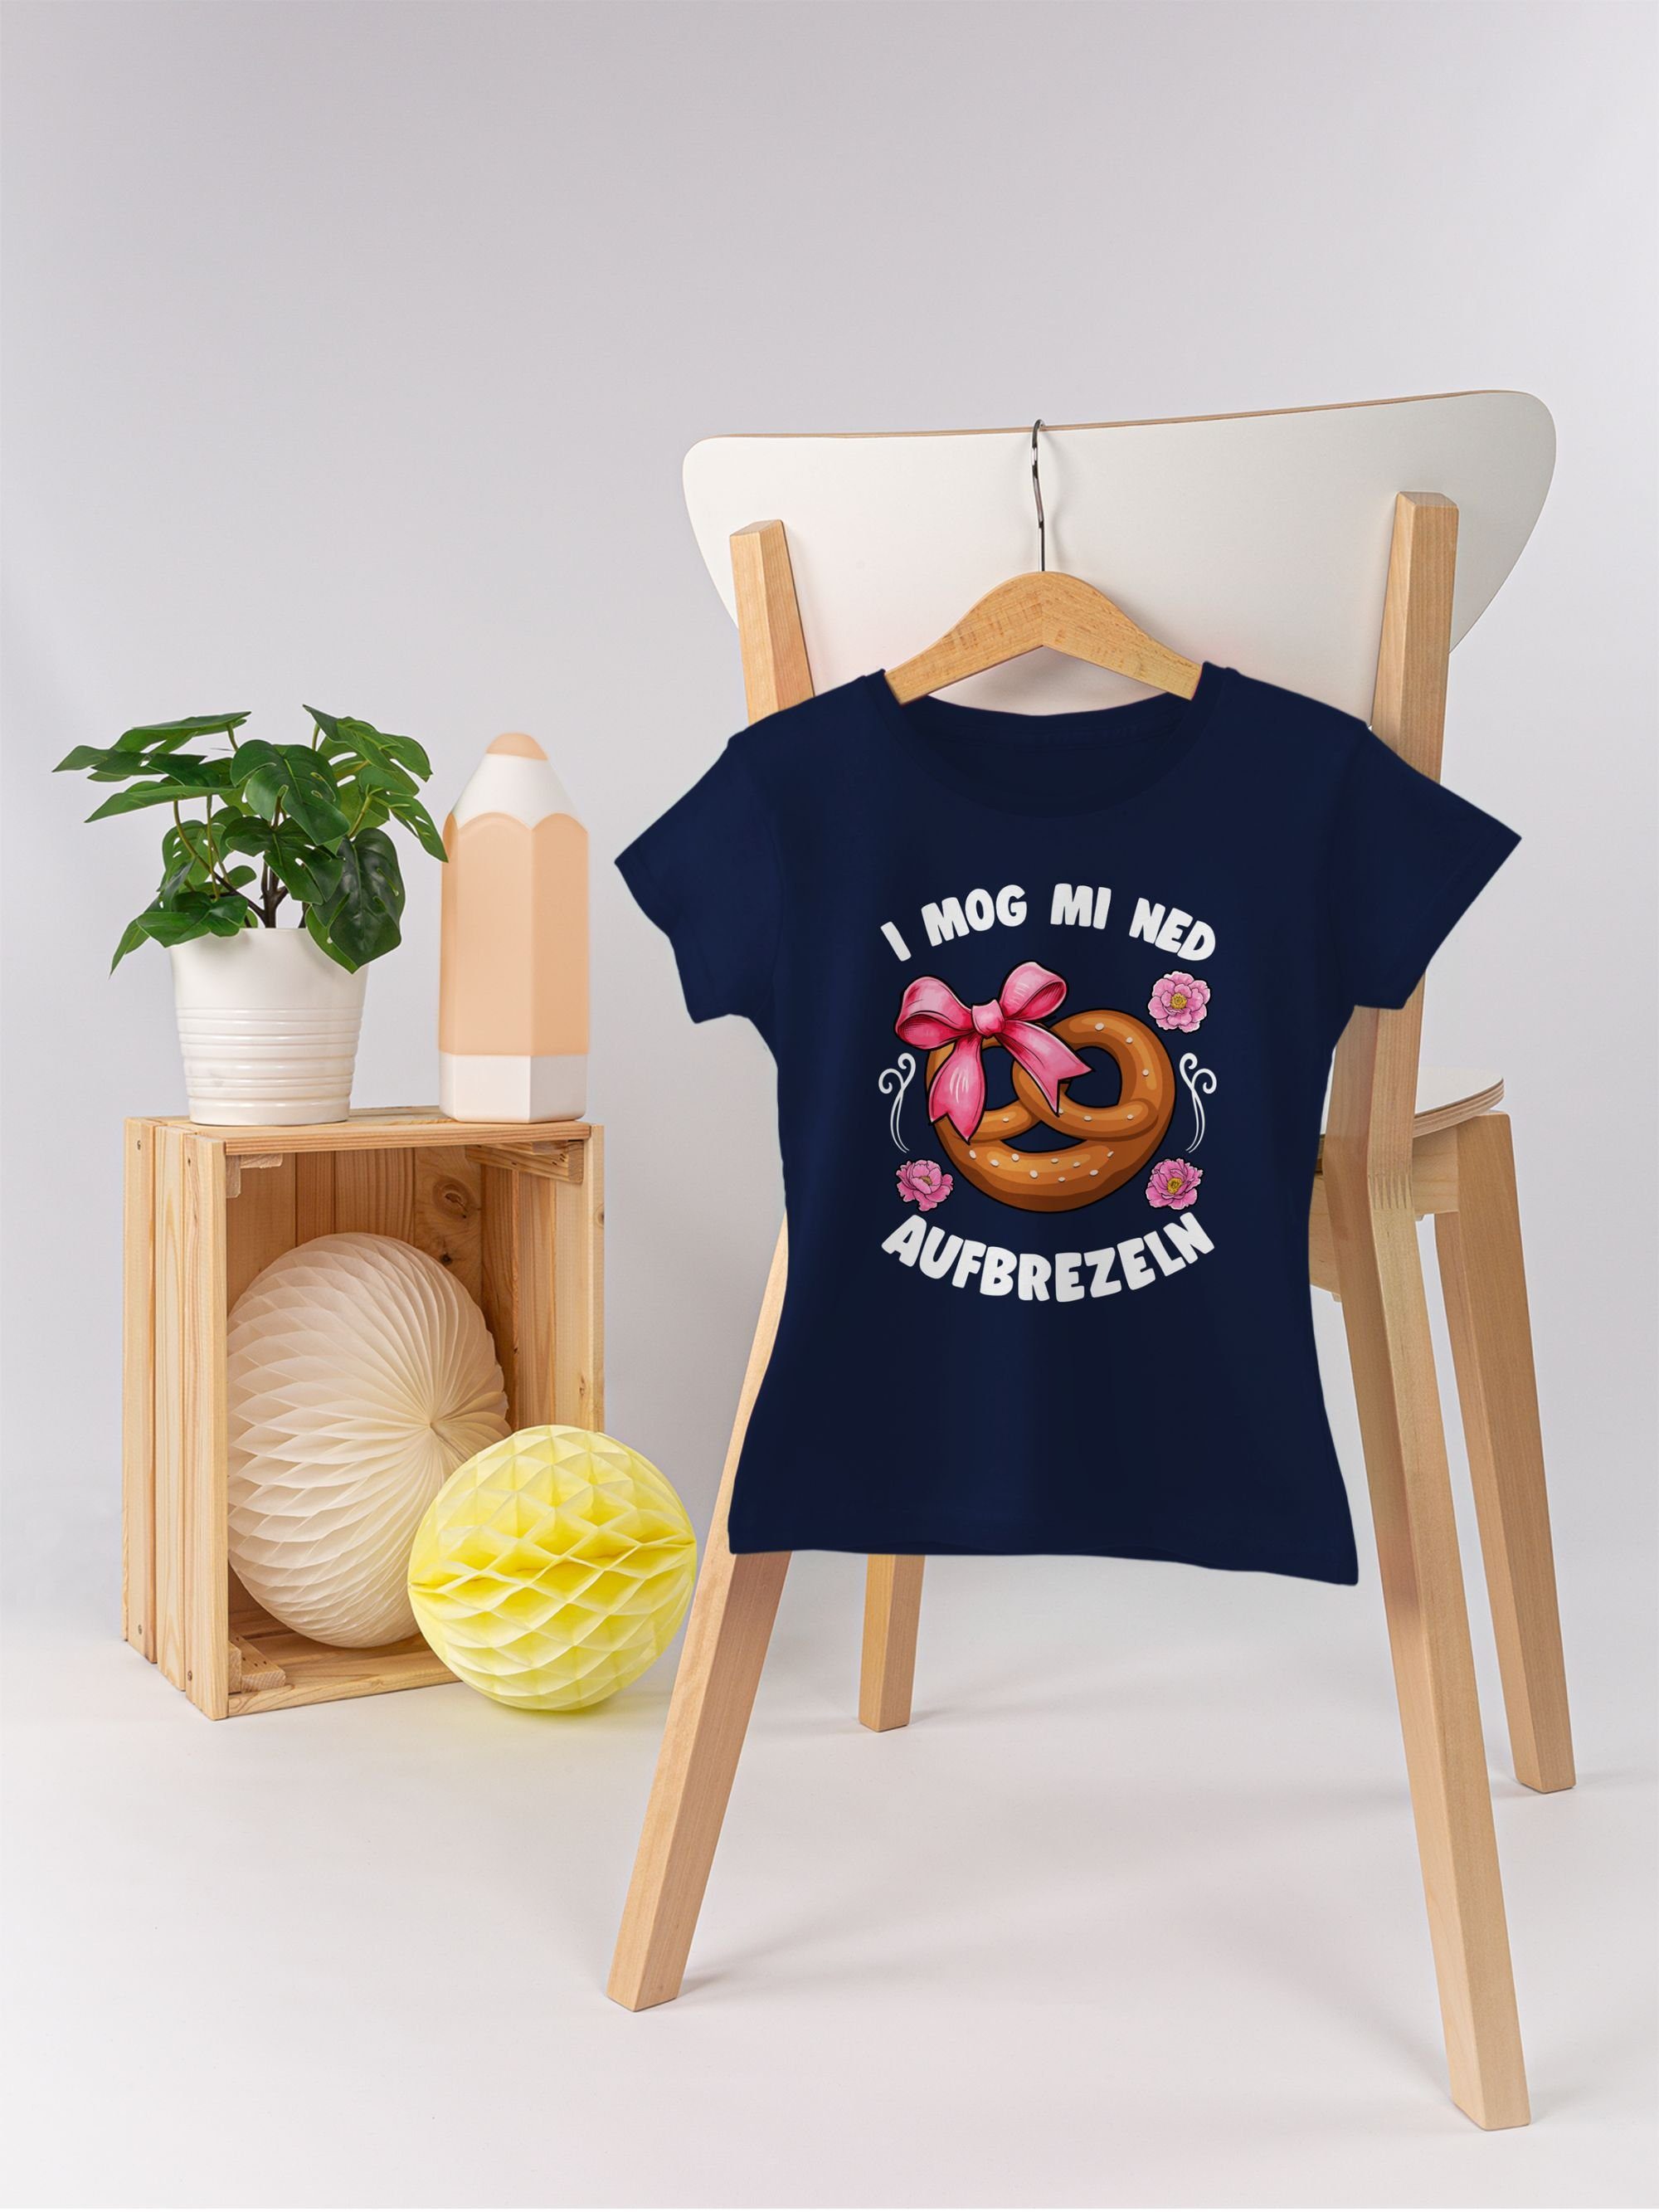 Shirtracer T-Shirt I mog mi aufbrezeln für Kinder Mode ned Oktoberfest Outfit Dunkelblau 3